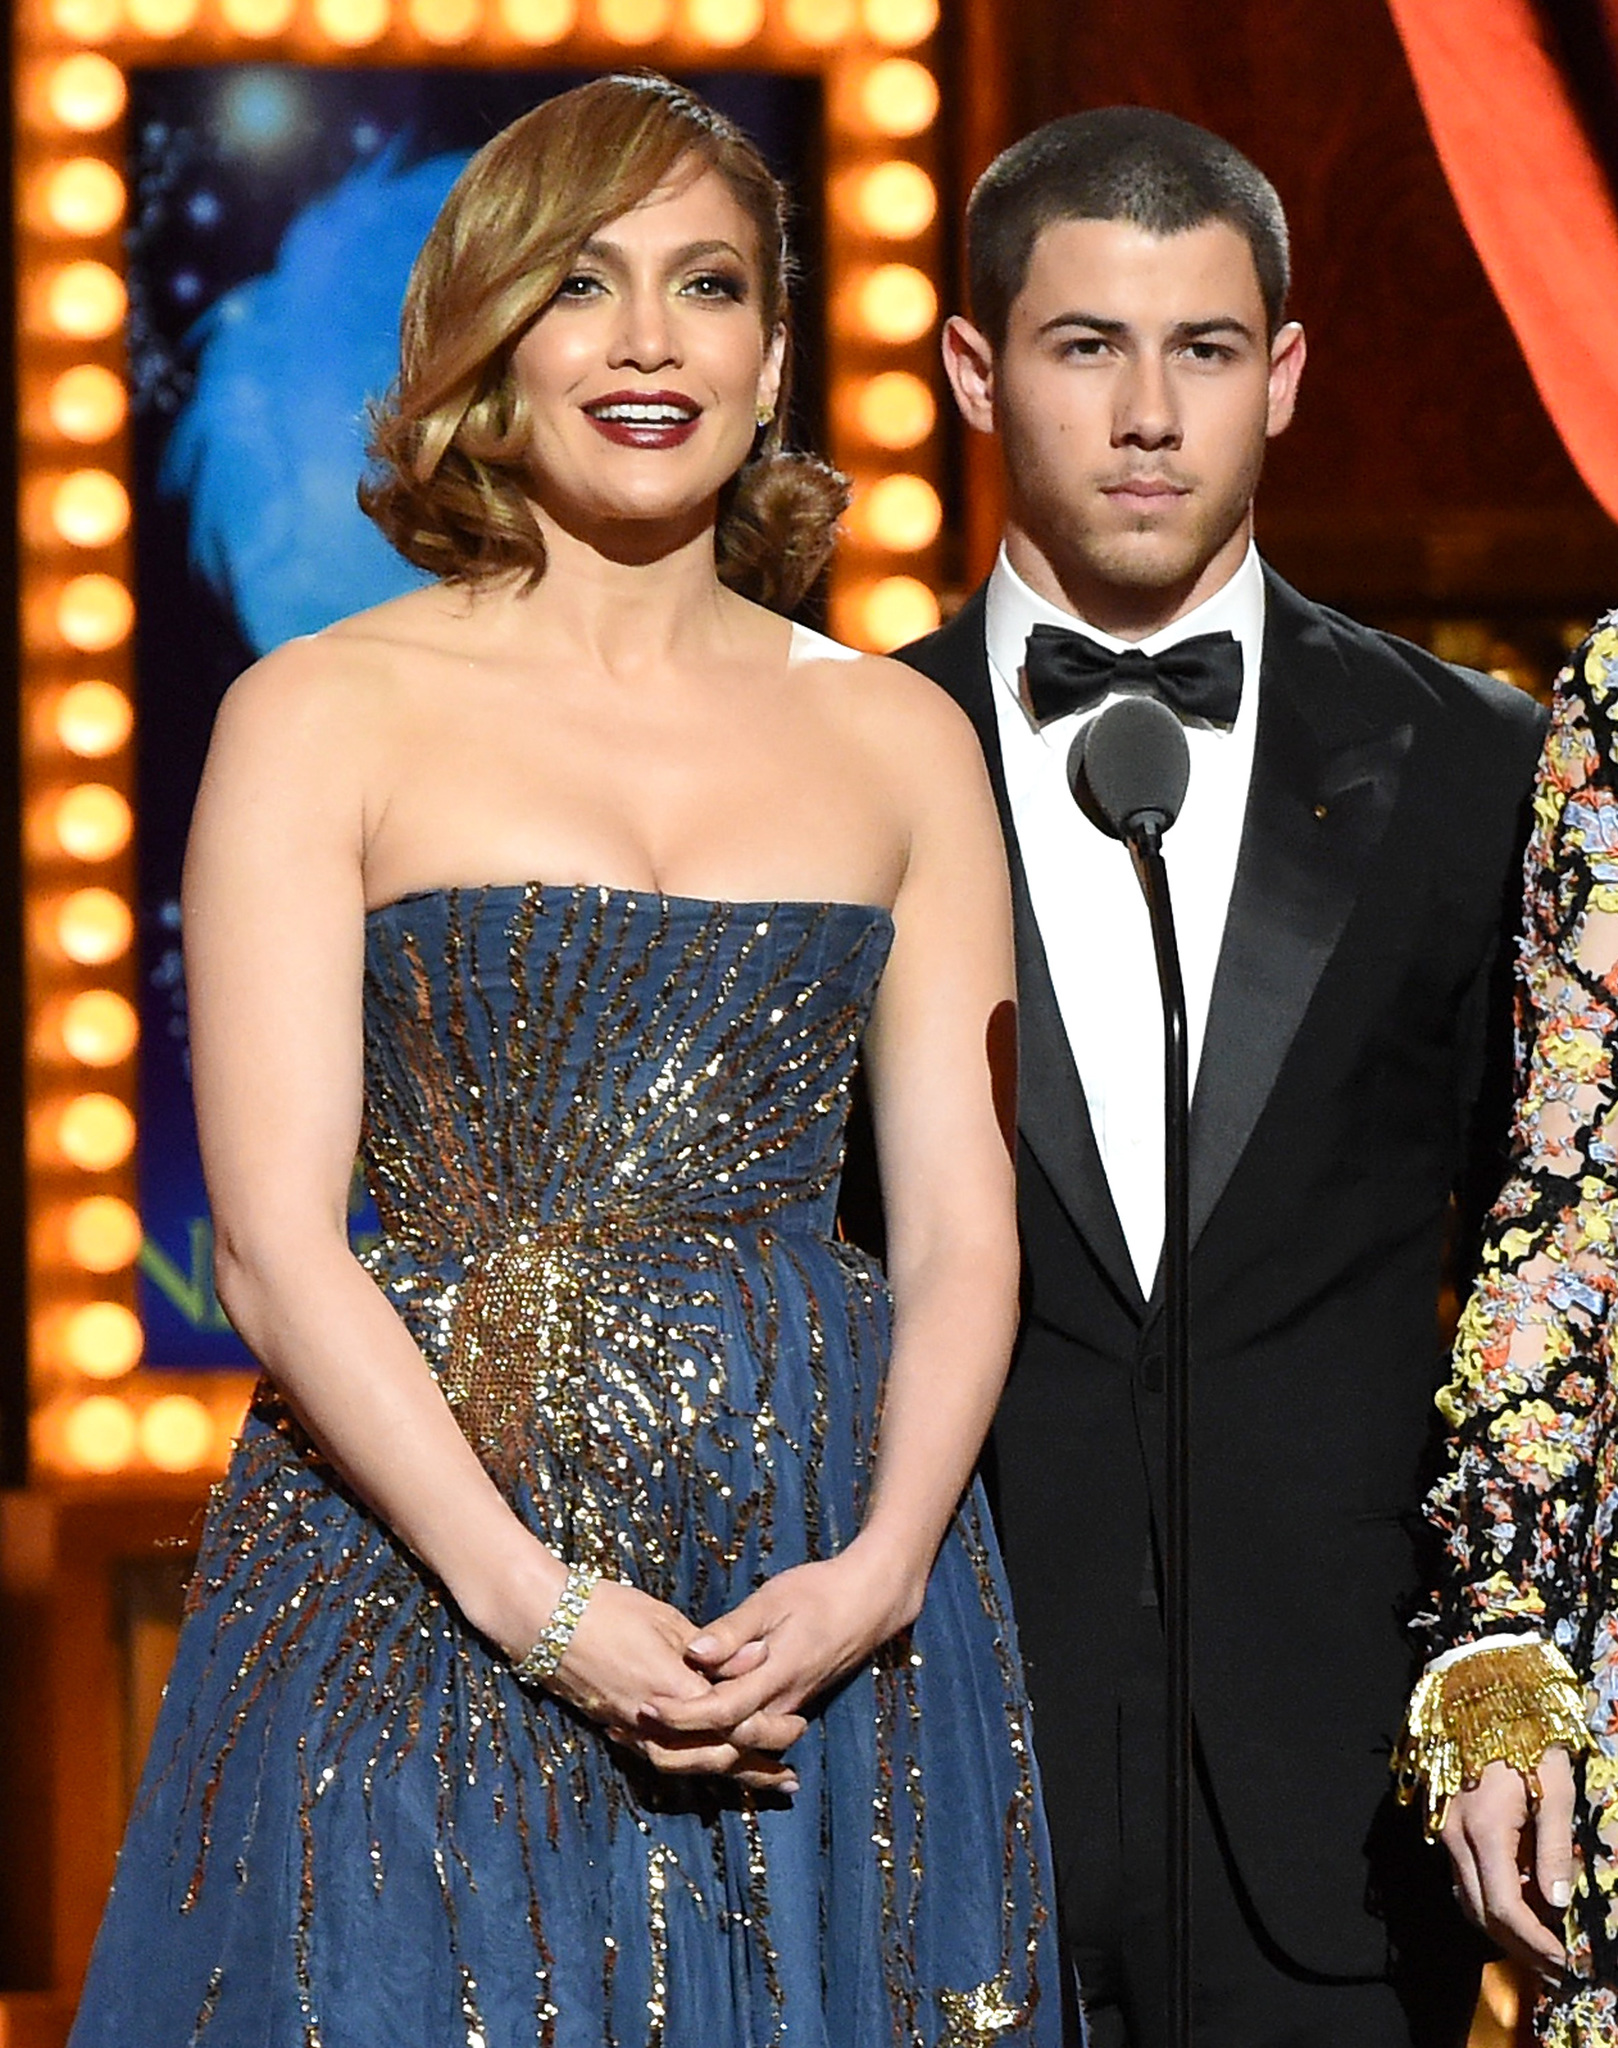 Jennifer Lopez and Nick Jonas